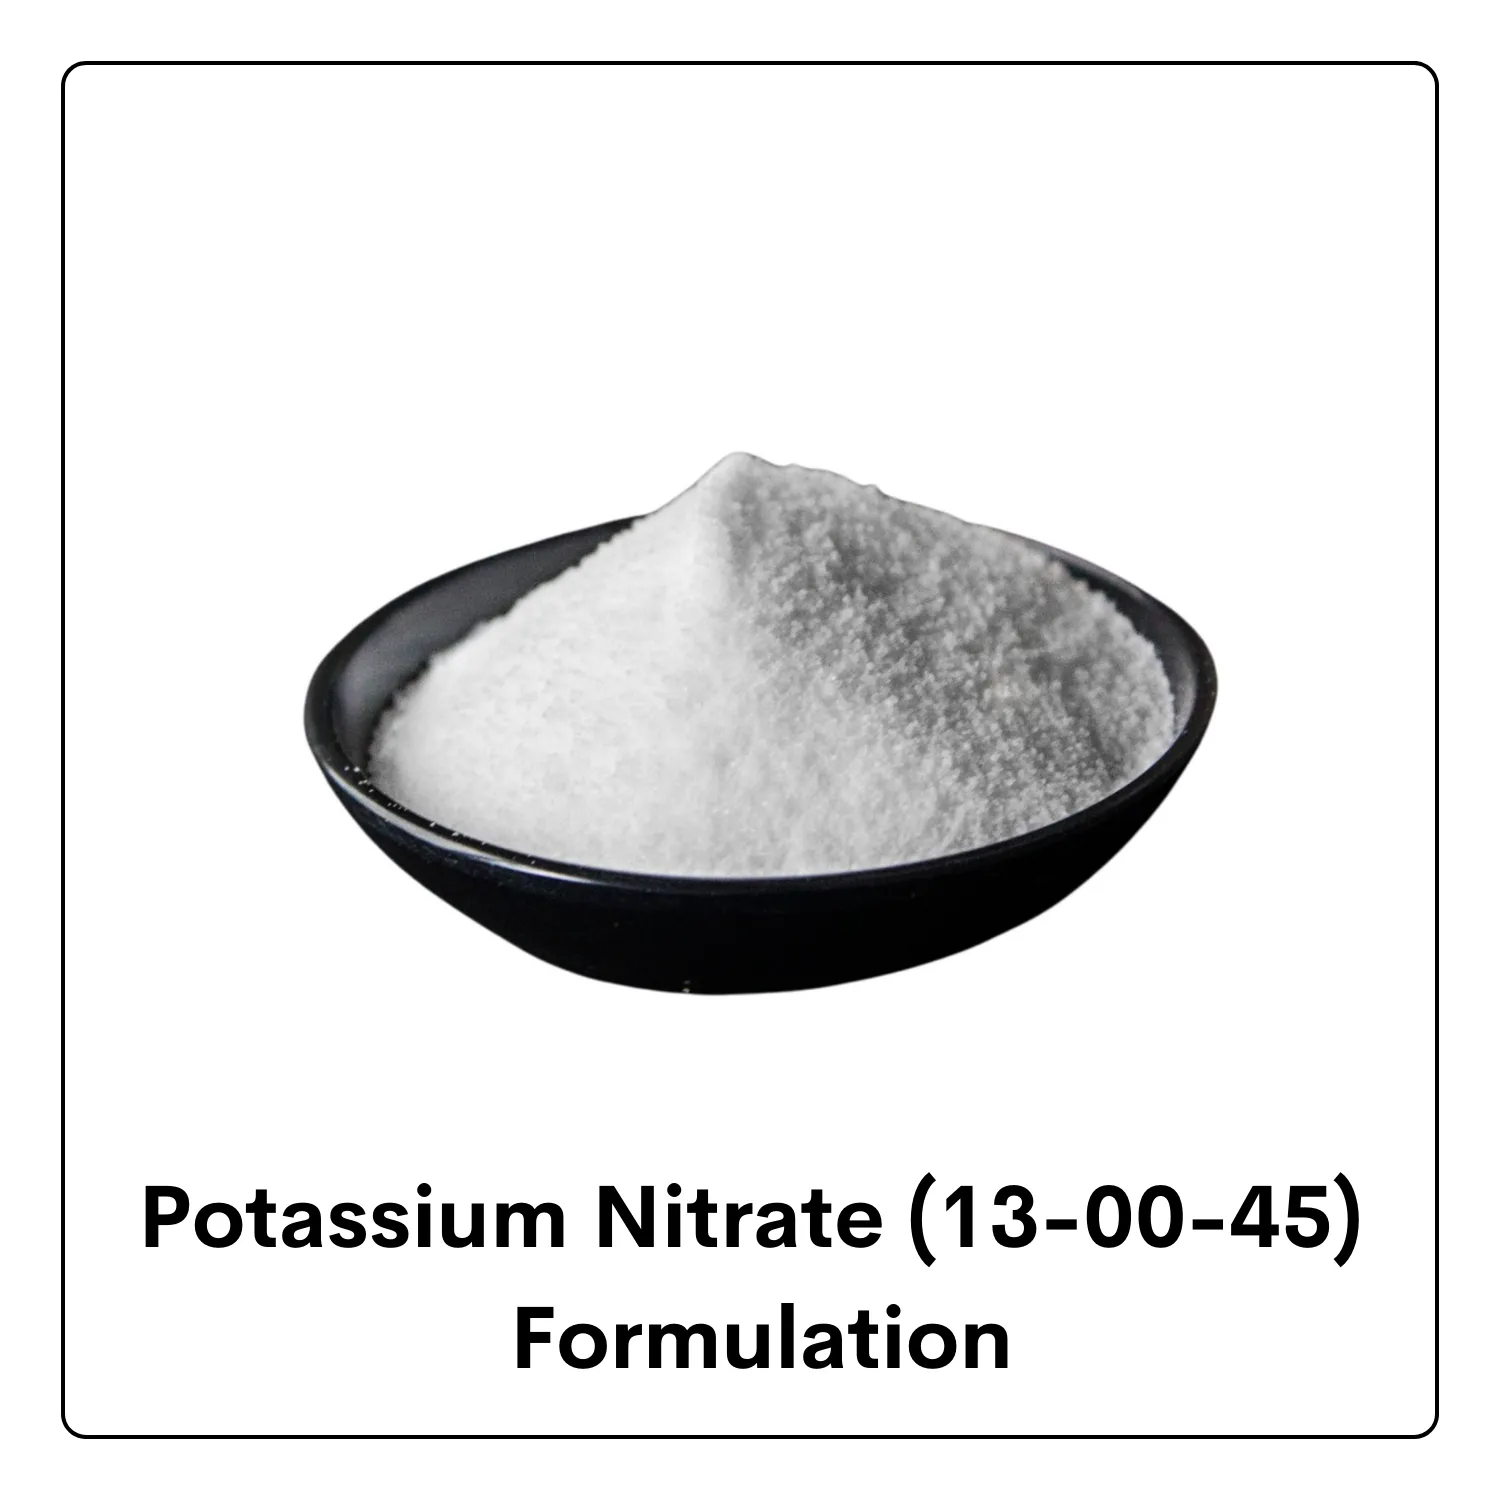 Potassium Nitrate (13-00-45)